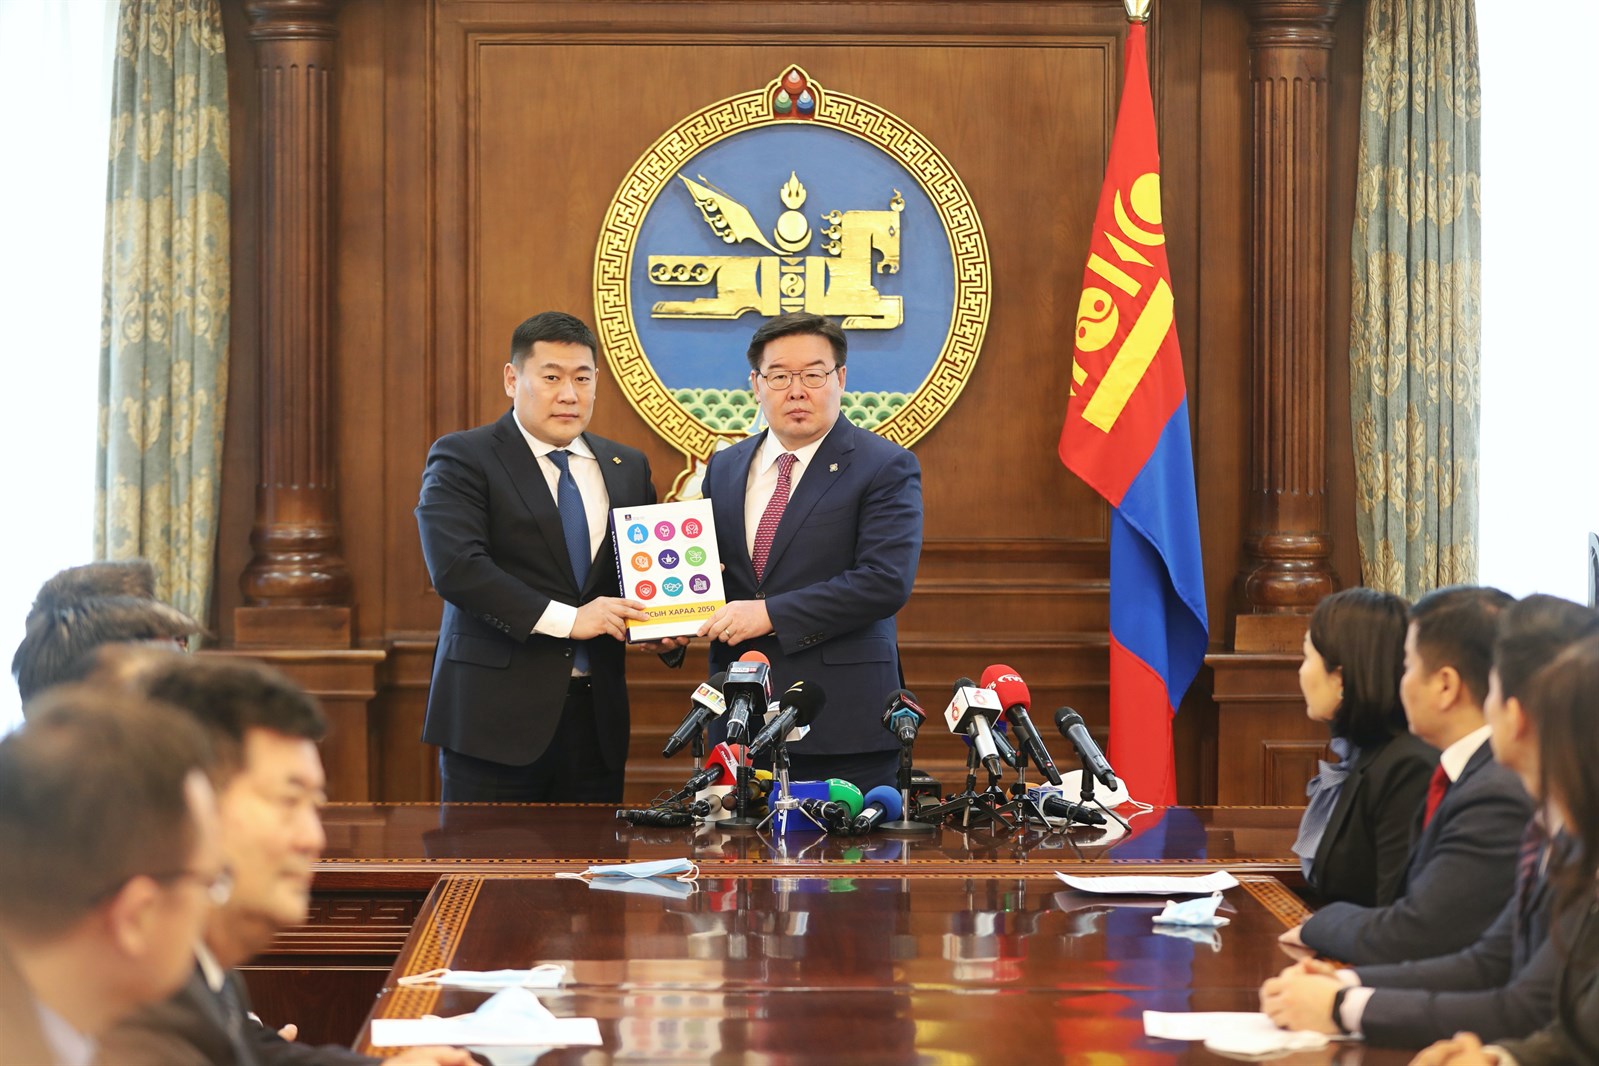 “Алсын хараа 2050” Монгол Улсын урт хугацааны хөгжлийн бодлогын баримт бичгийн төслийг өргөн барилаа